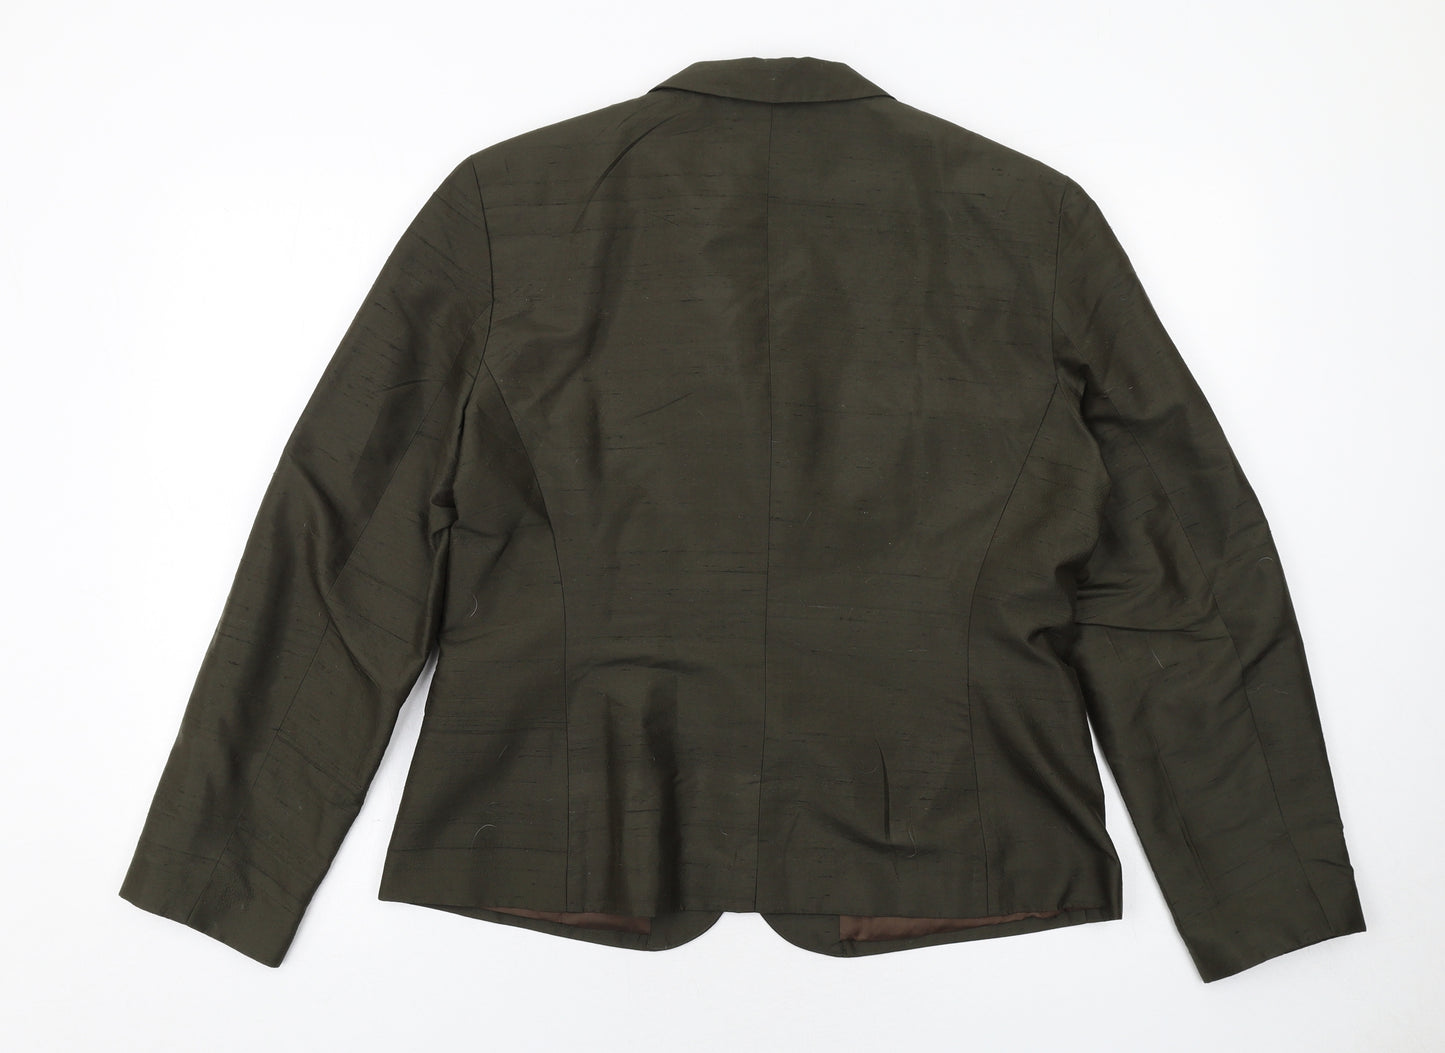 Finity Studio Womens Green Jacket Blazer Size 18 Button